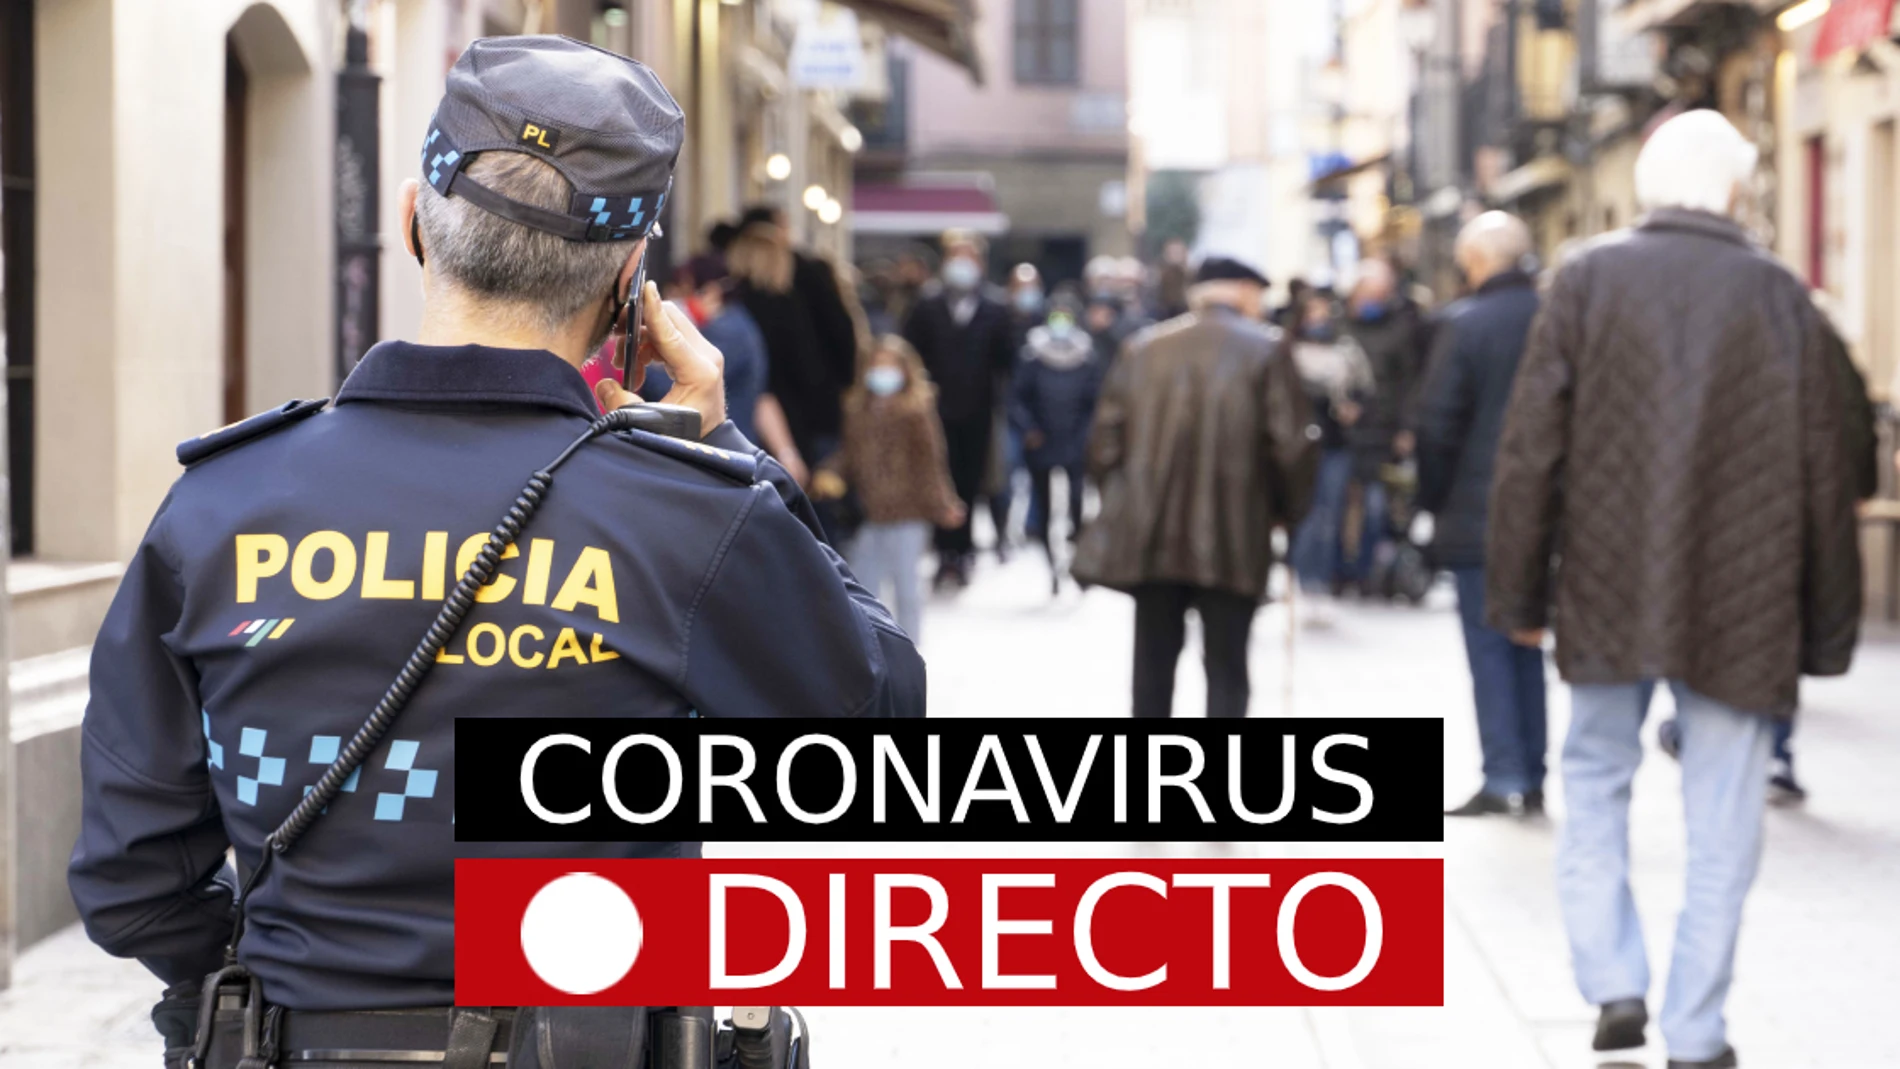 Coronavirus España | Plan de Navidad y restricciones por el puente de diciembre | Última hora del COVID-19, en directo